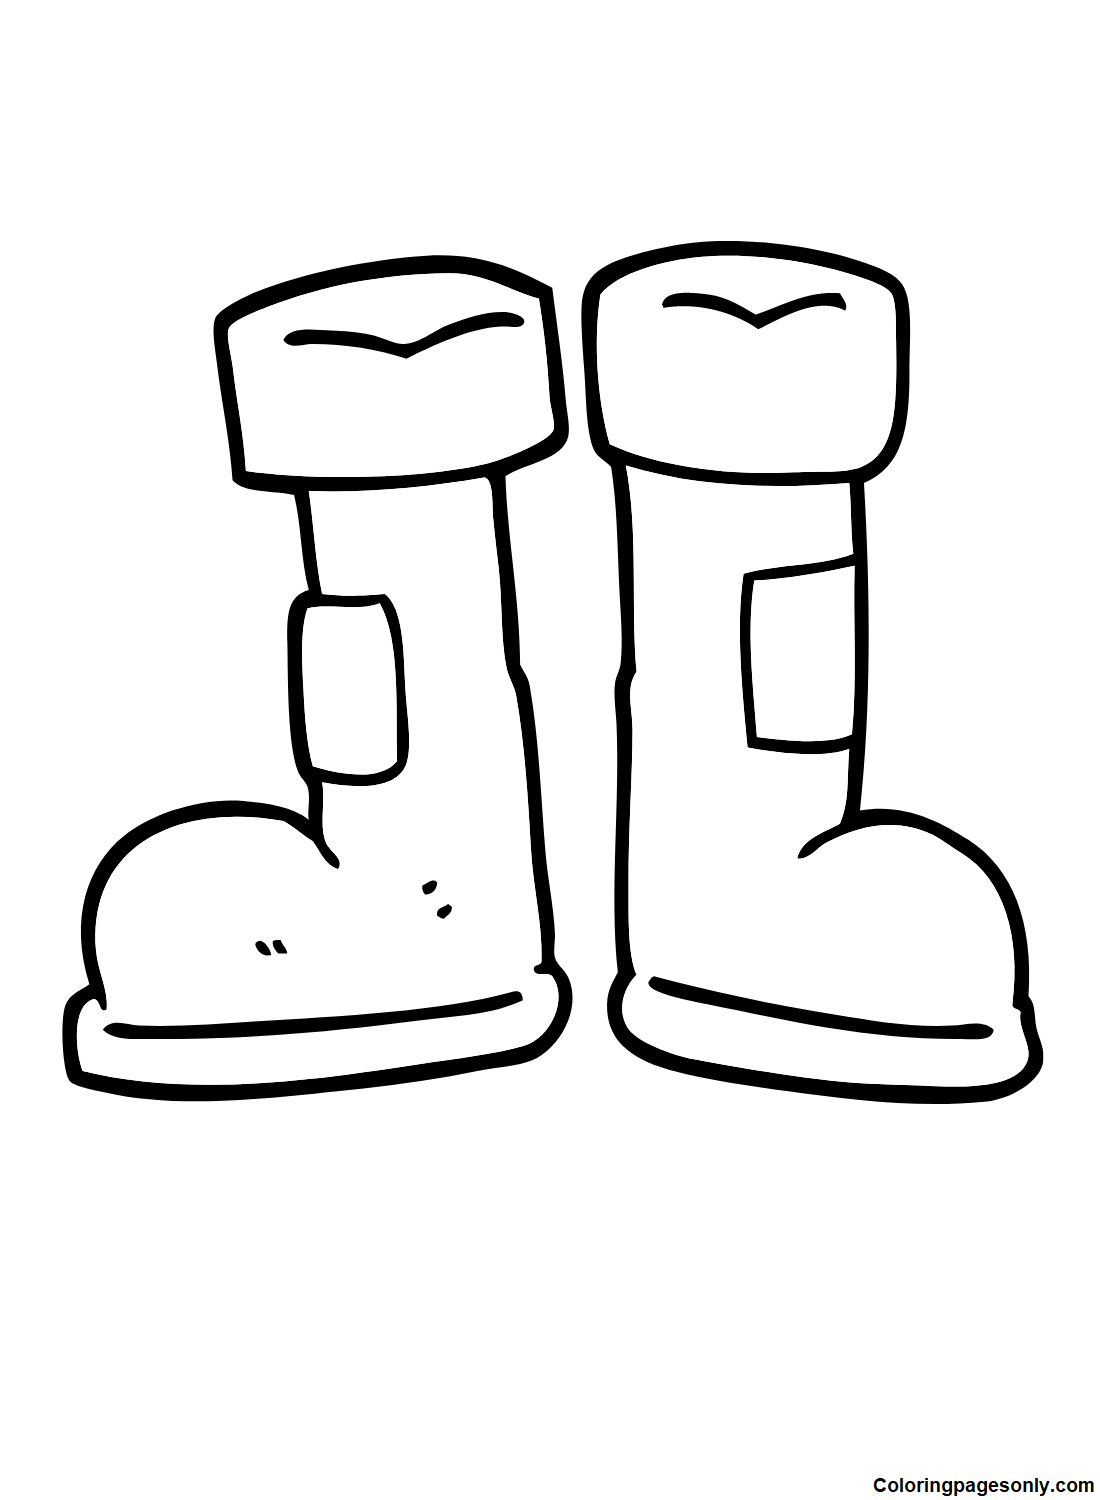 Stivali Wellington di Boots